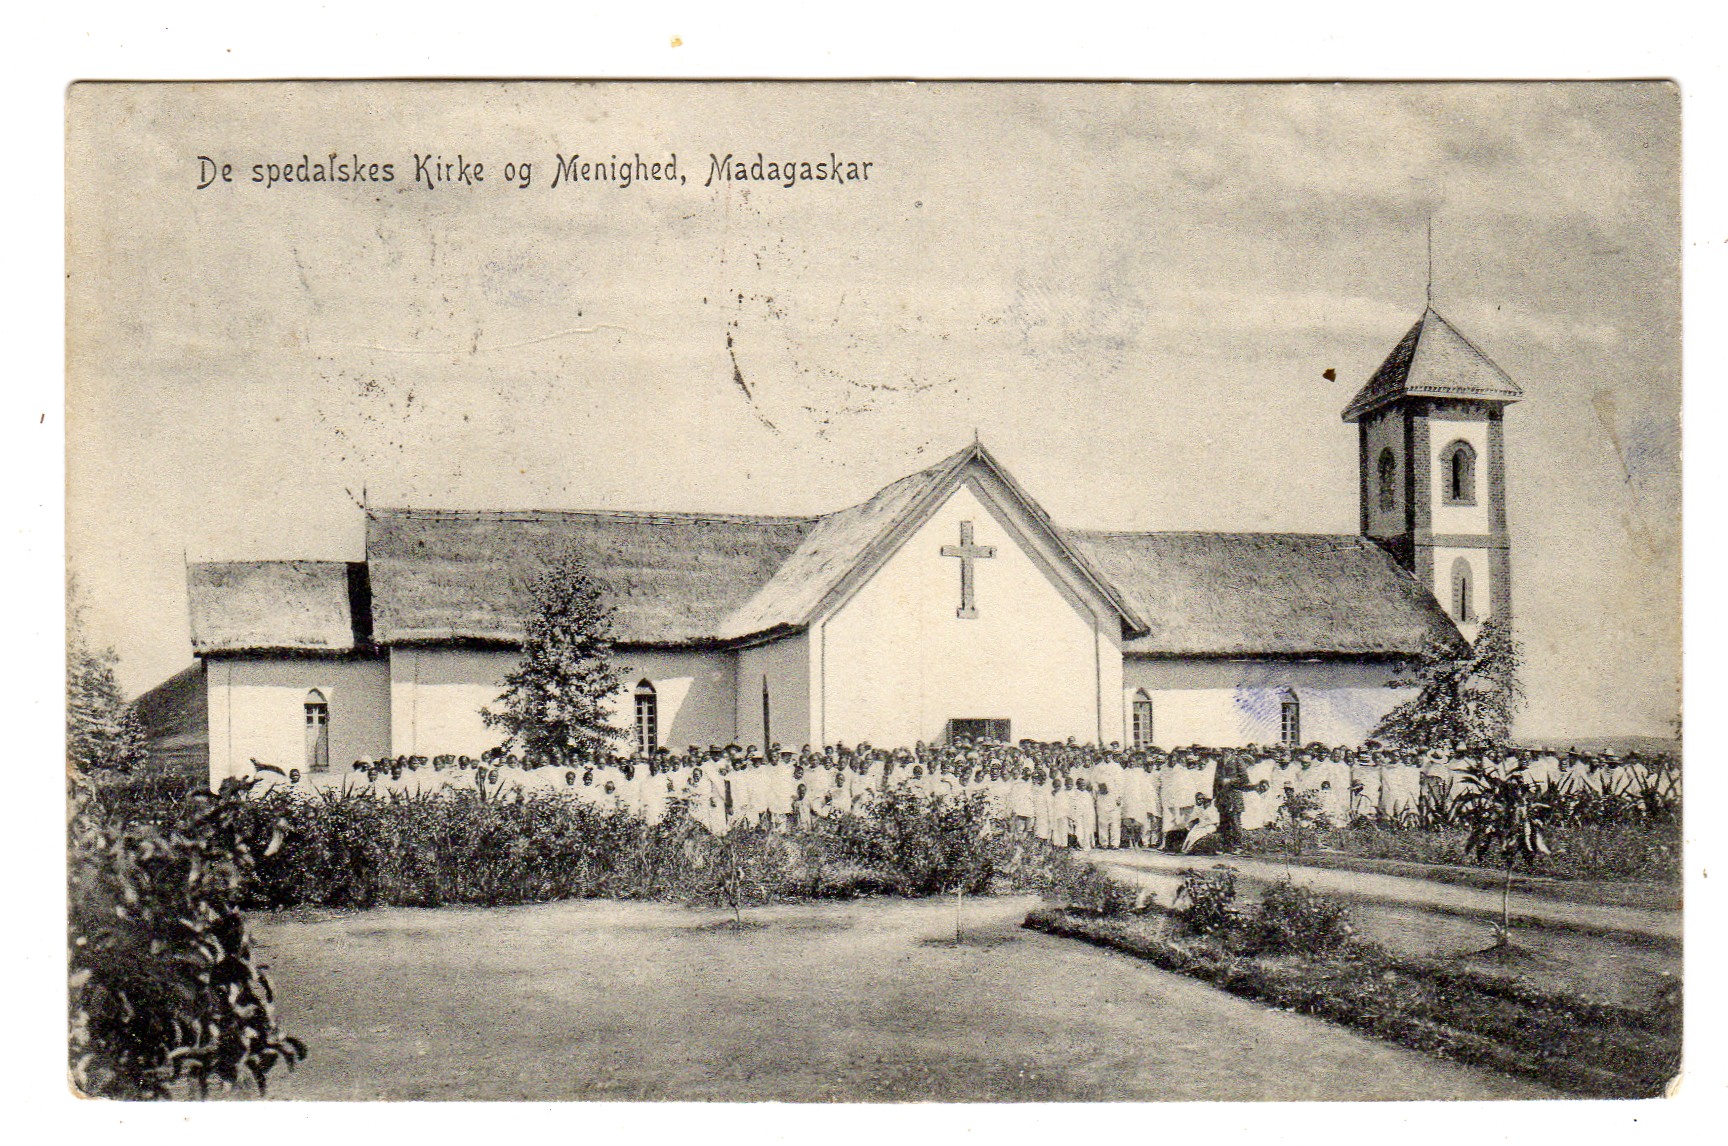 De spedalskes Kirke og menighed Madagaskar st Førland 1913 grad 4 Norsk lystryk